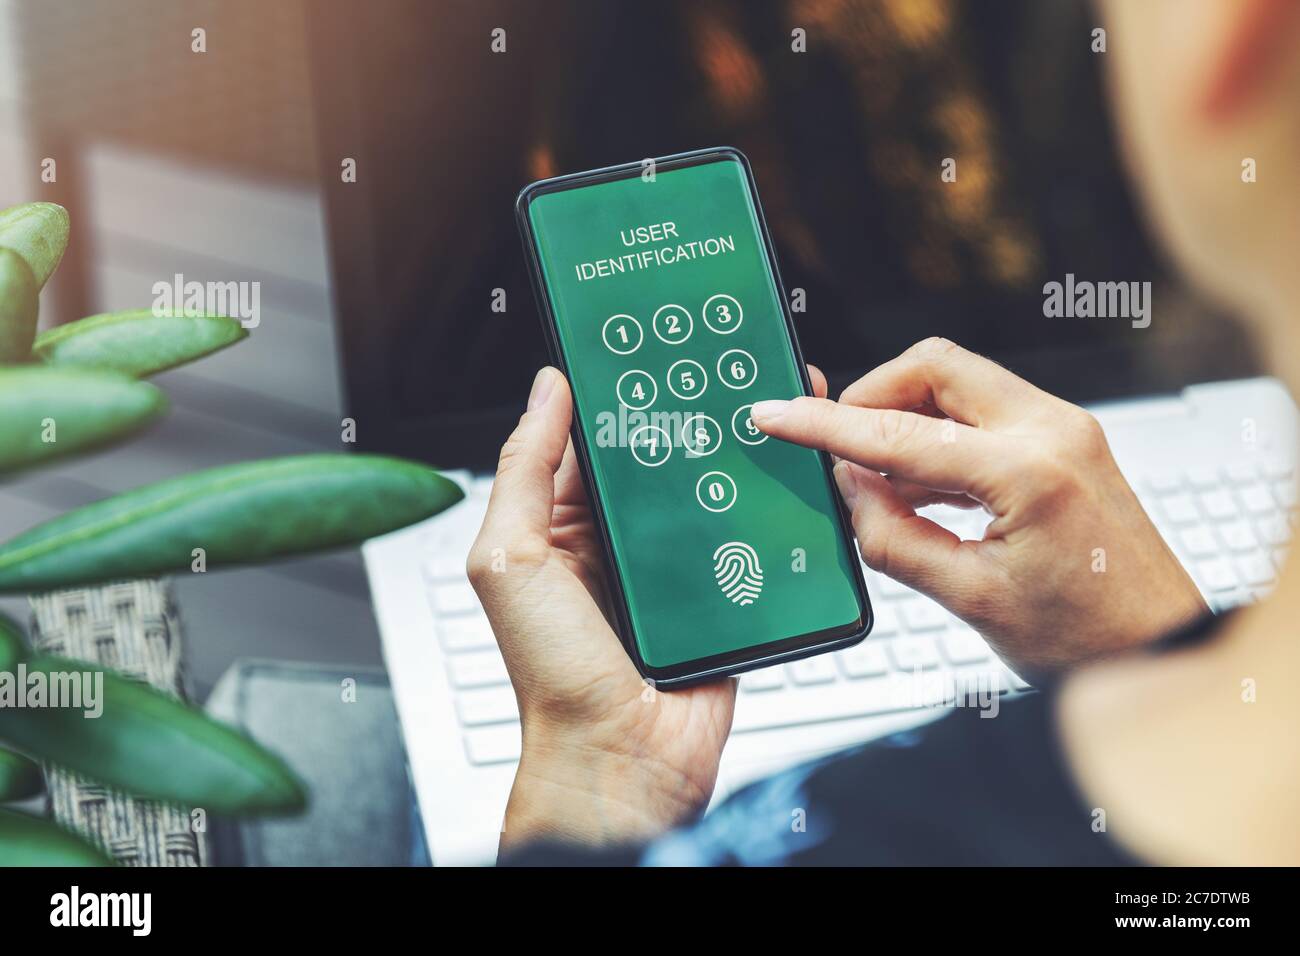 sicurezza informatica - donna che utilizza l'applicazione mobile nello smartphone per l'autenticazione degli utenti di internet banking Foto Stock